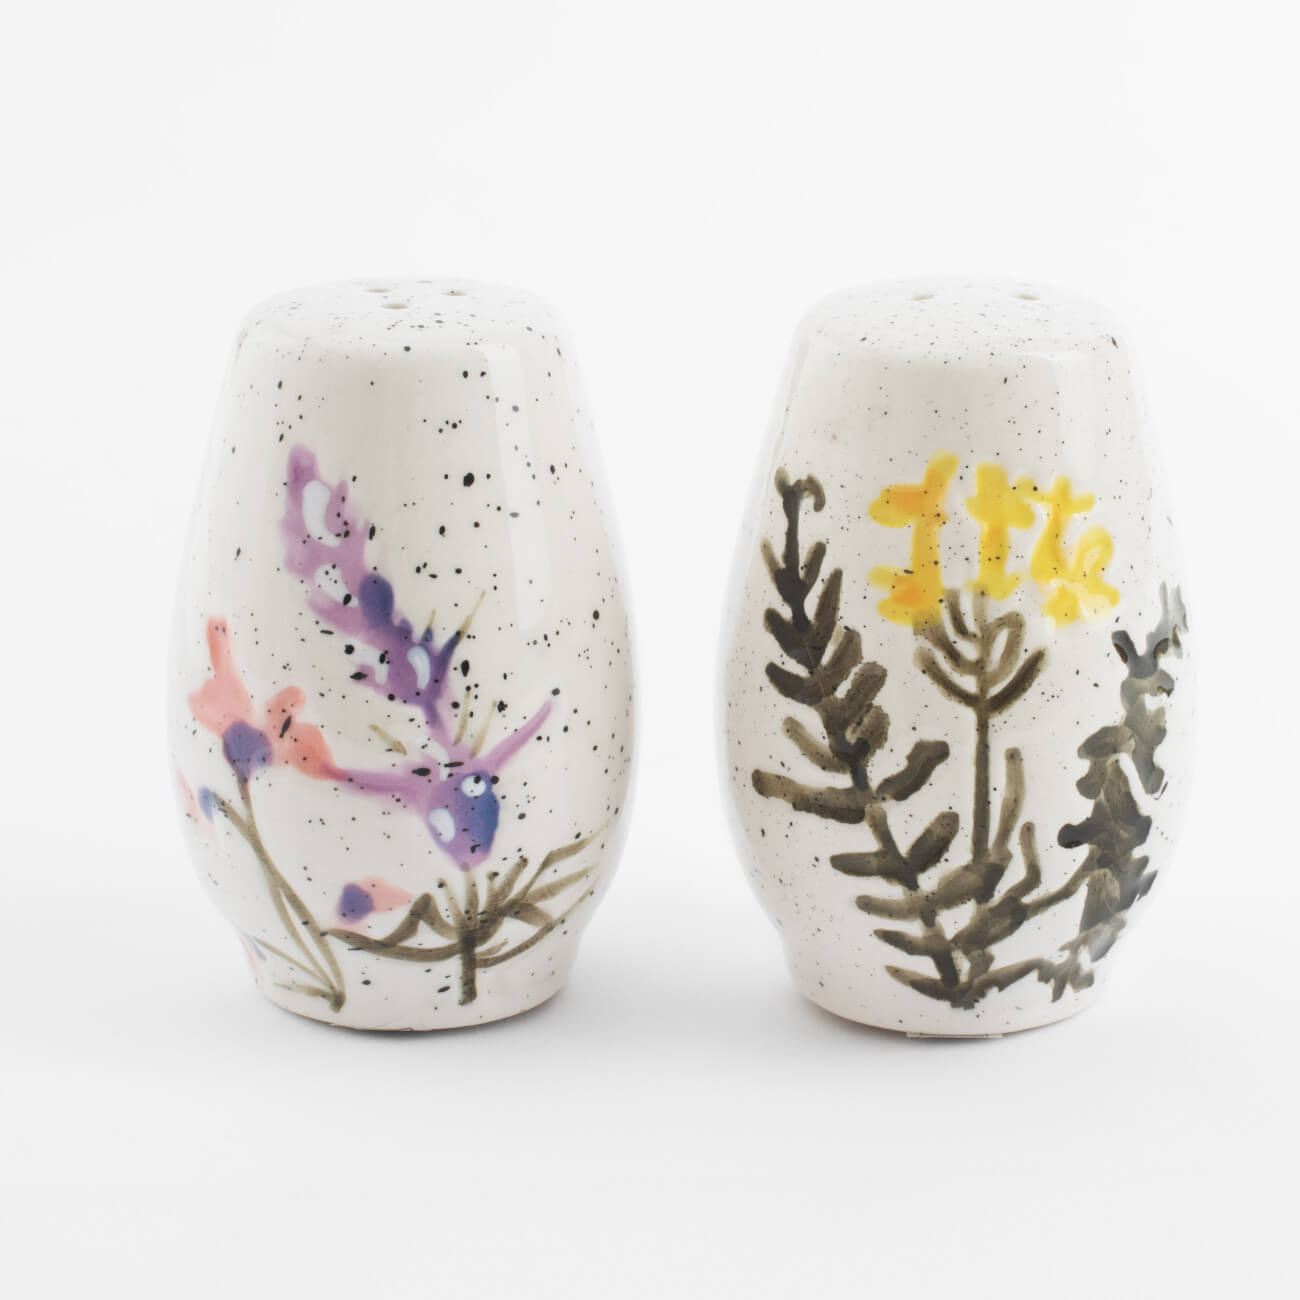 Набор для соли и перца, 7 см, керамика, молочный, в крапинку, Полевые цветы, Meadow speckled изображение № 1